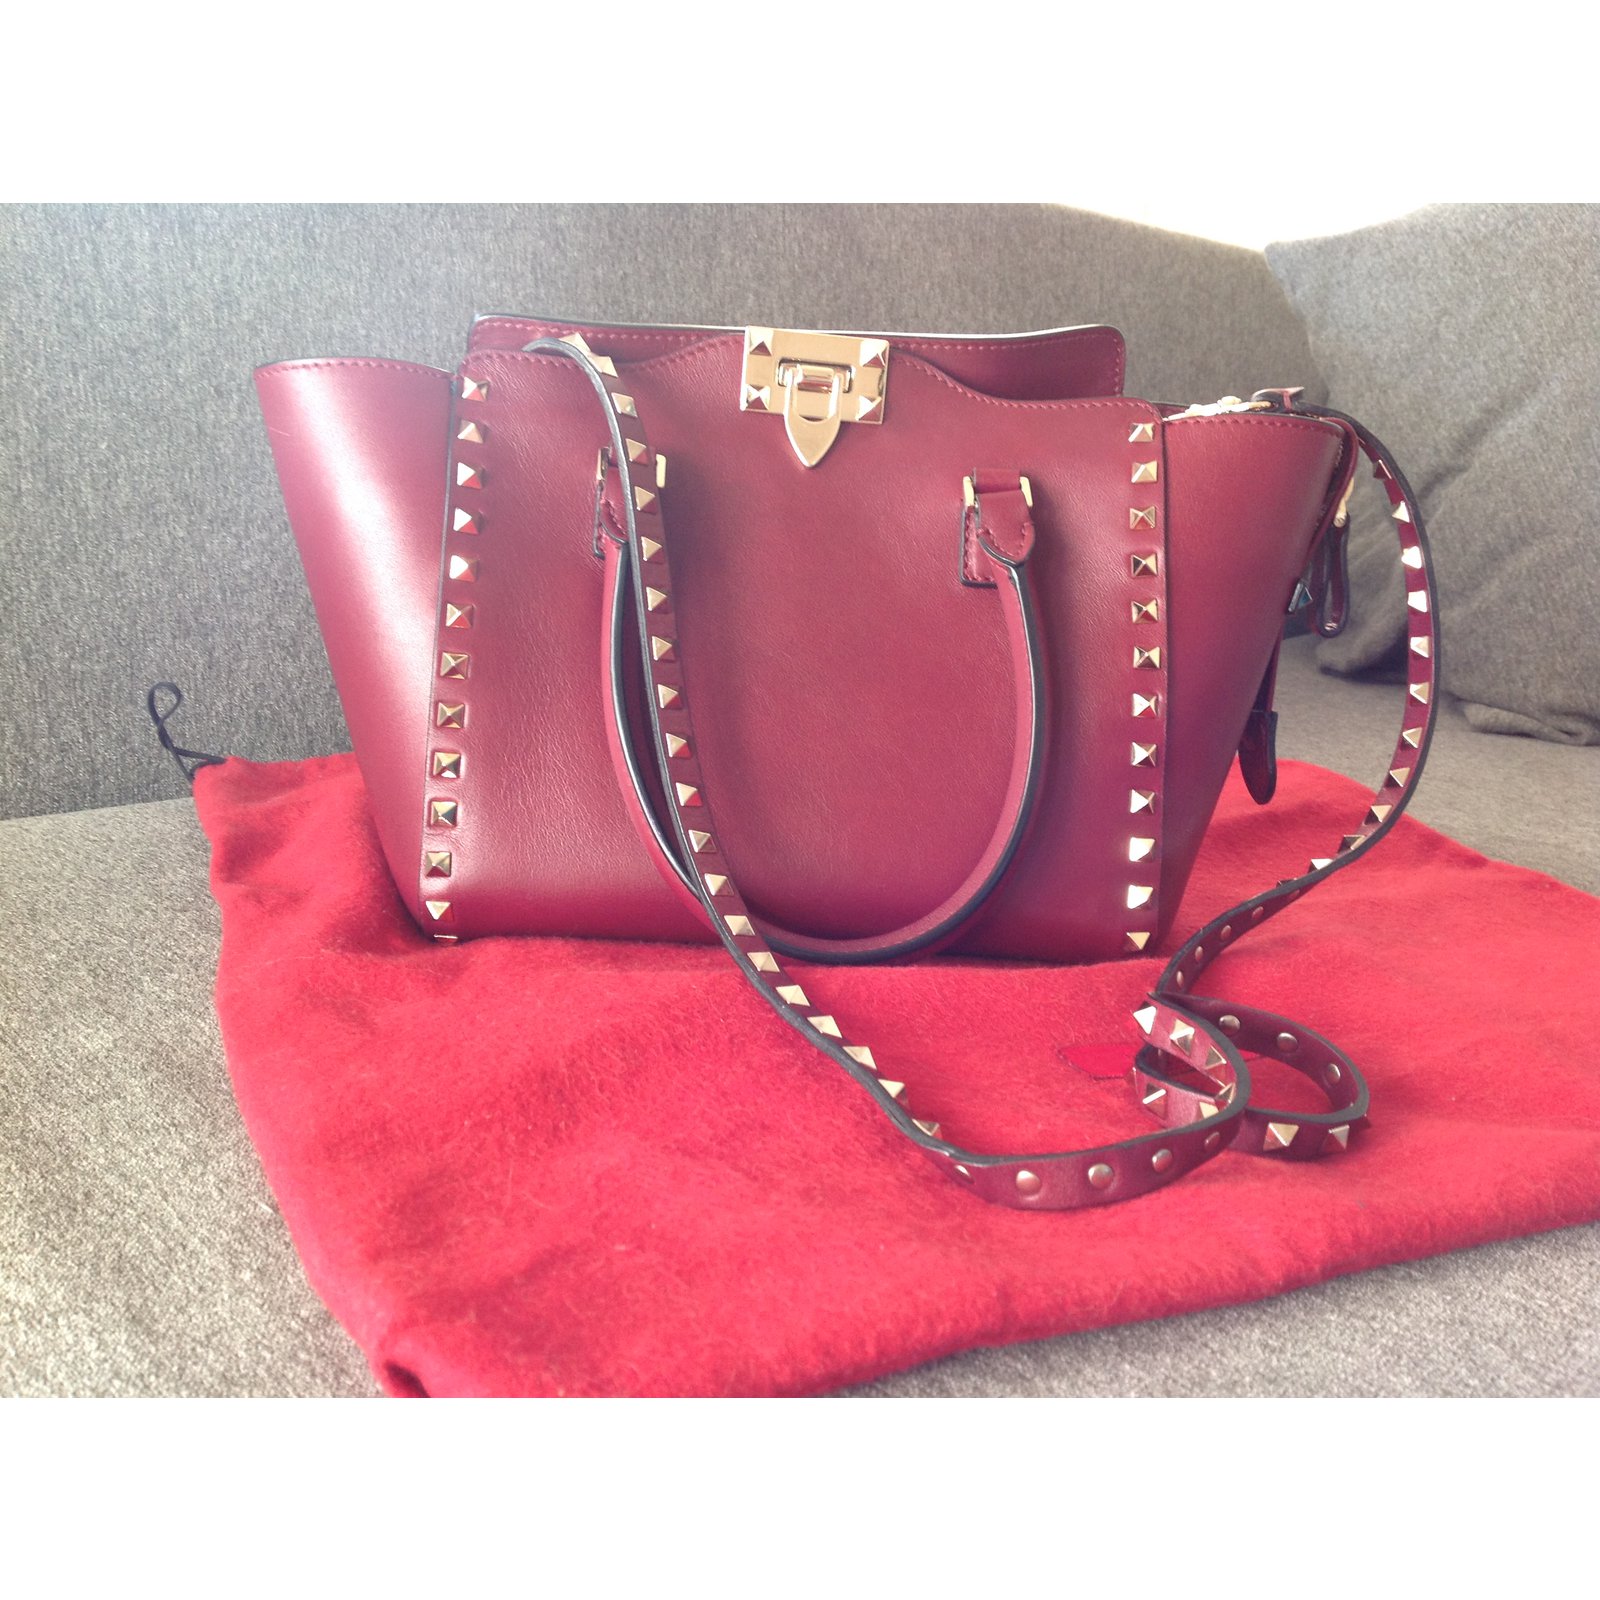 NEW Valentino By Mario Valentino Mia Crossbody Bag in Lipstick Red |  Crossbody bag, Bags, Mario valentino